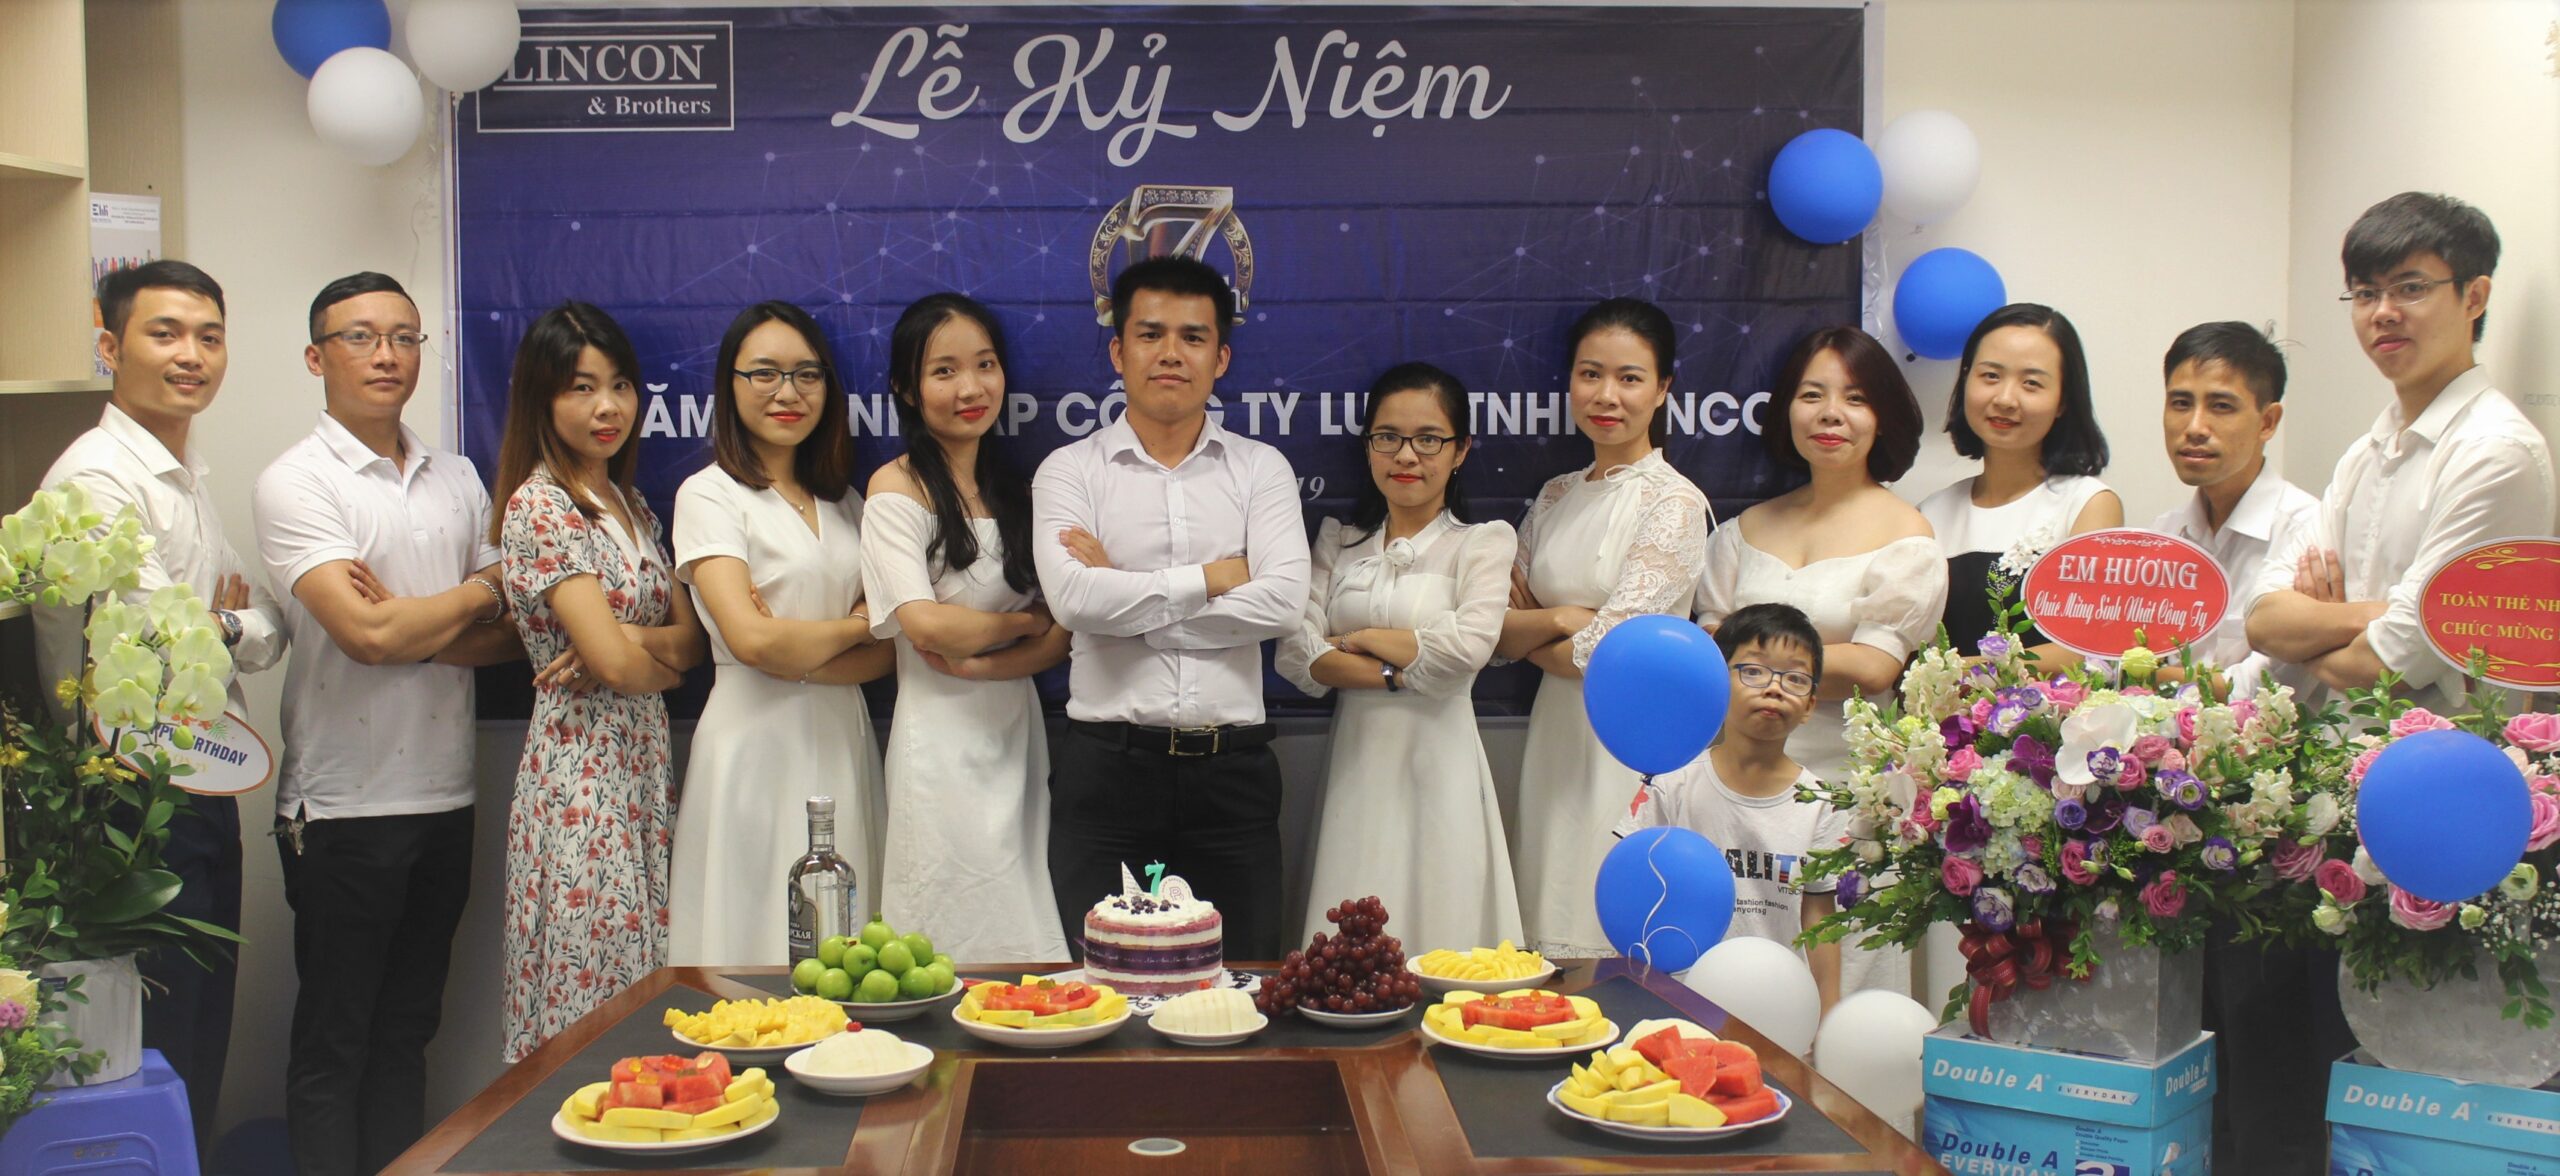 Lincon Law firm tuyển dụng Thực tập sinh pháp lý làm việc tại Hà Nội